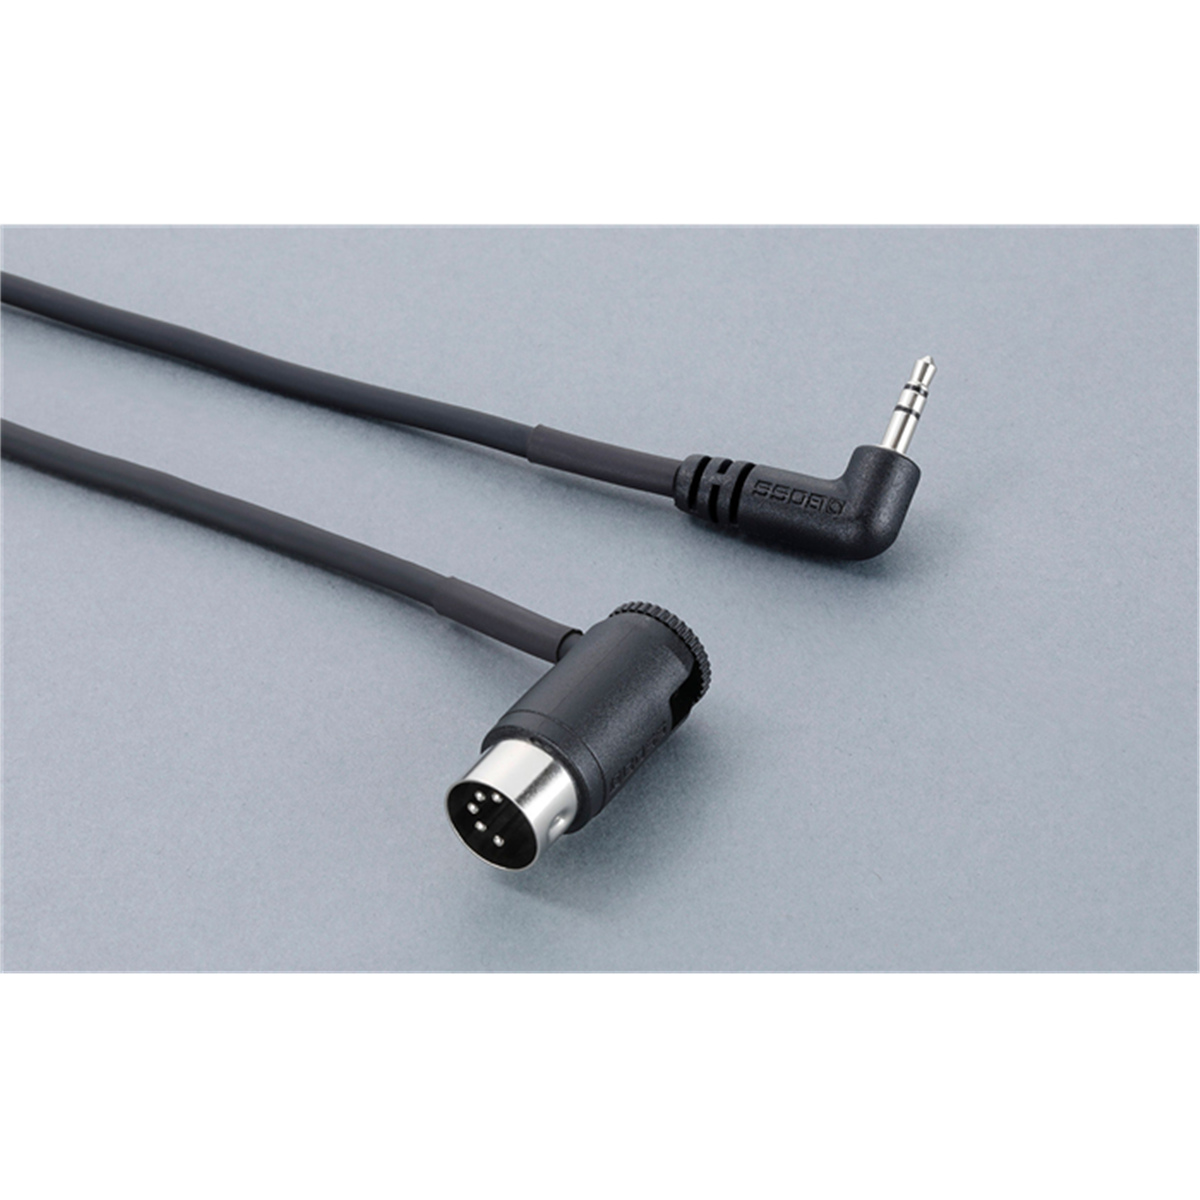 BOSS BMIDI-1-35 MIDI Cable